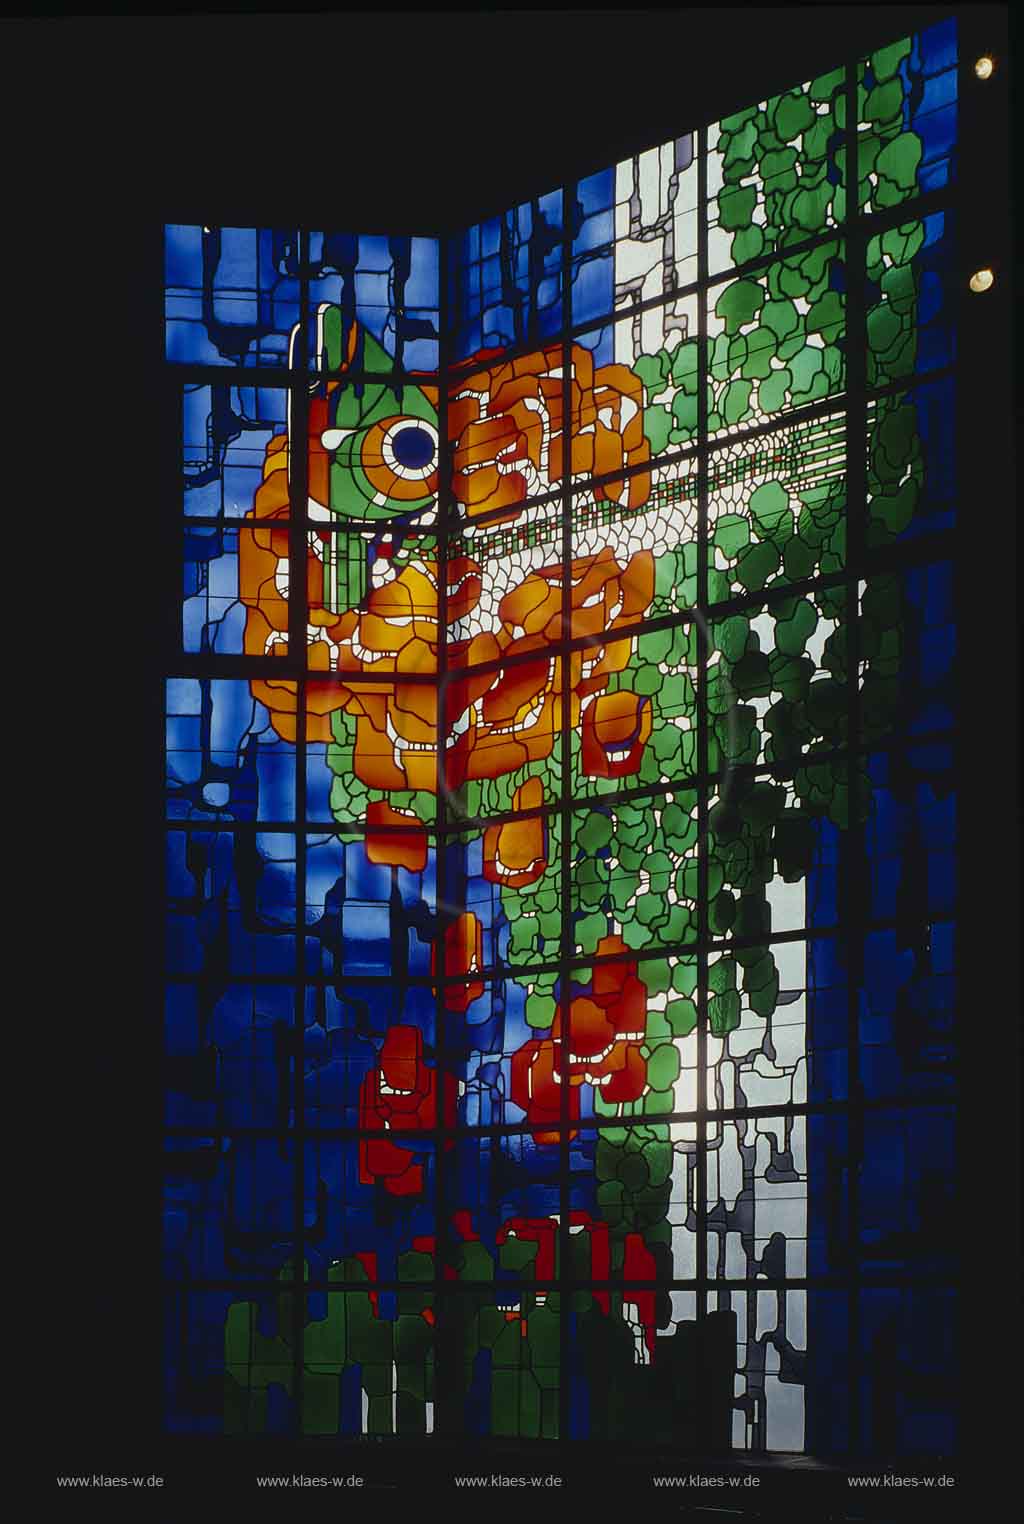 Neviges, Velbert, Kreis Mettmann, Blick in Wallfahrskirche Mariendom, Maria, Knigin des Friedens, auf Fischerfenster